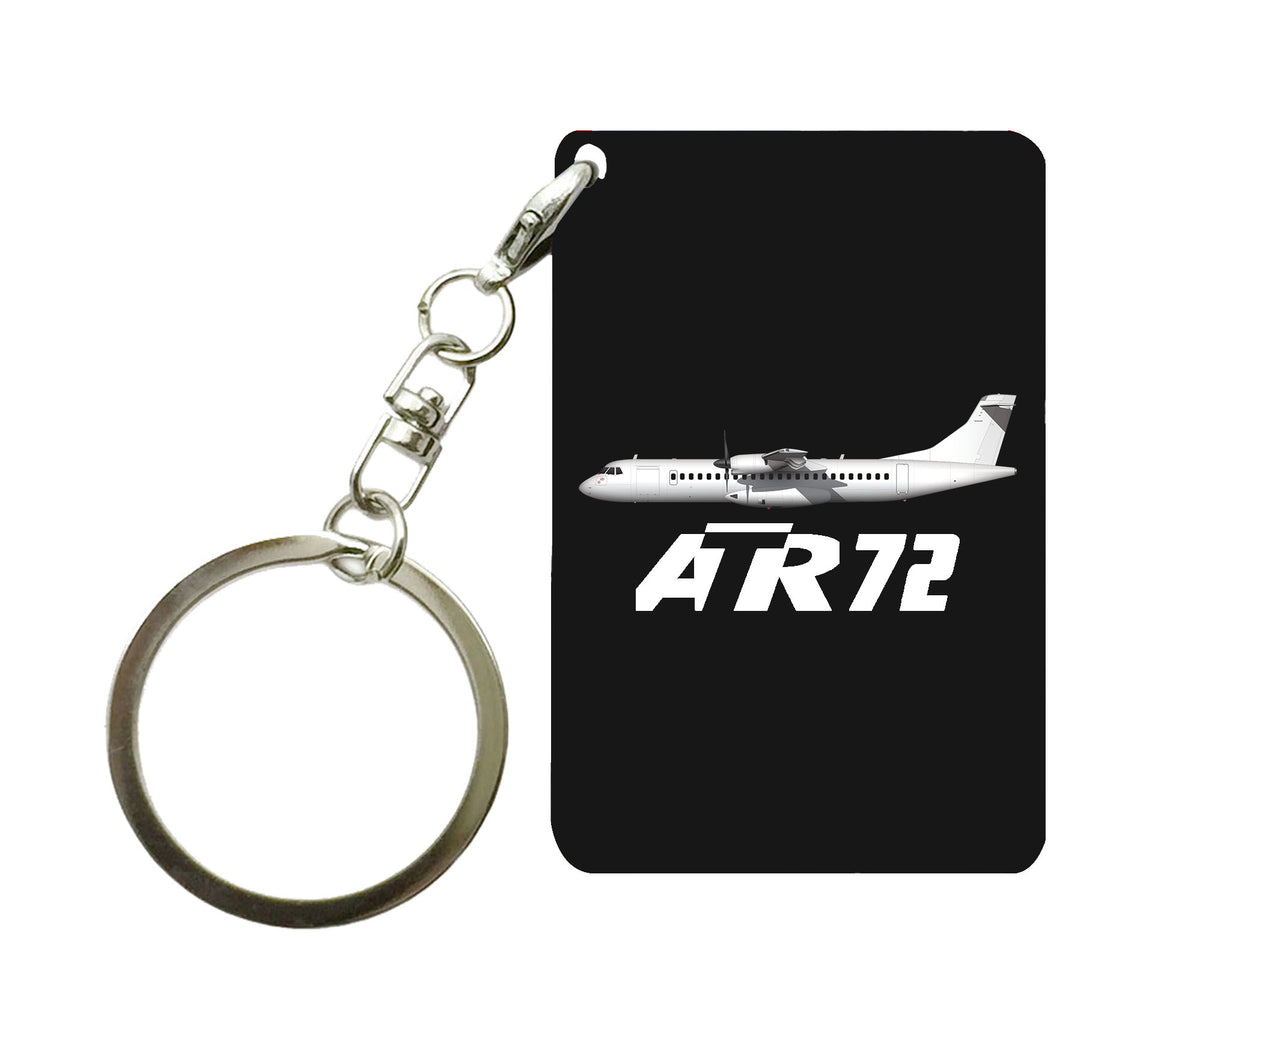 The ATR72 Designed Key Chains